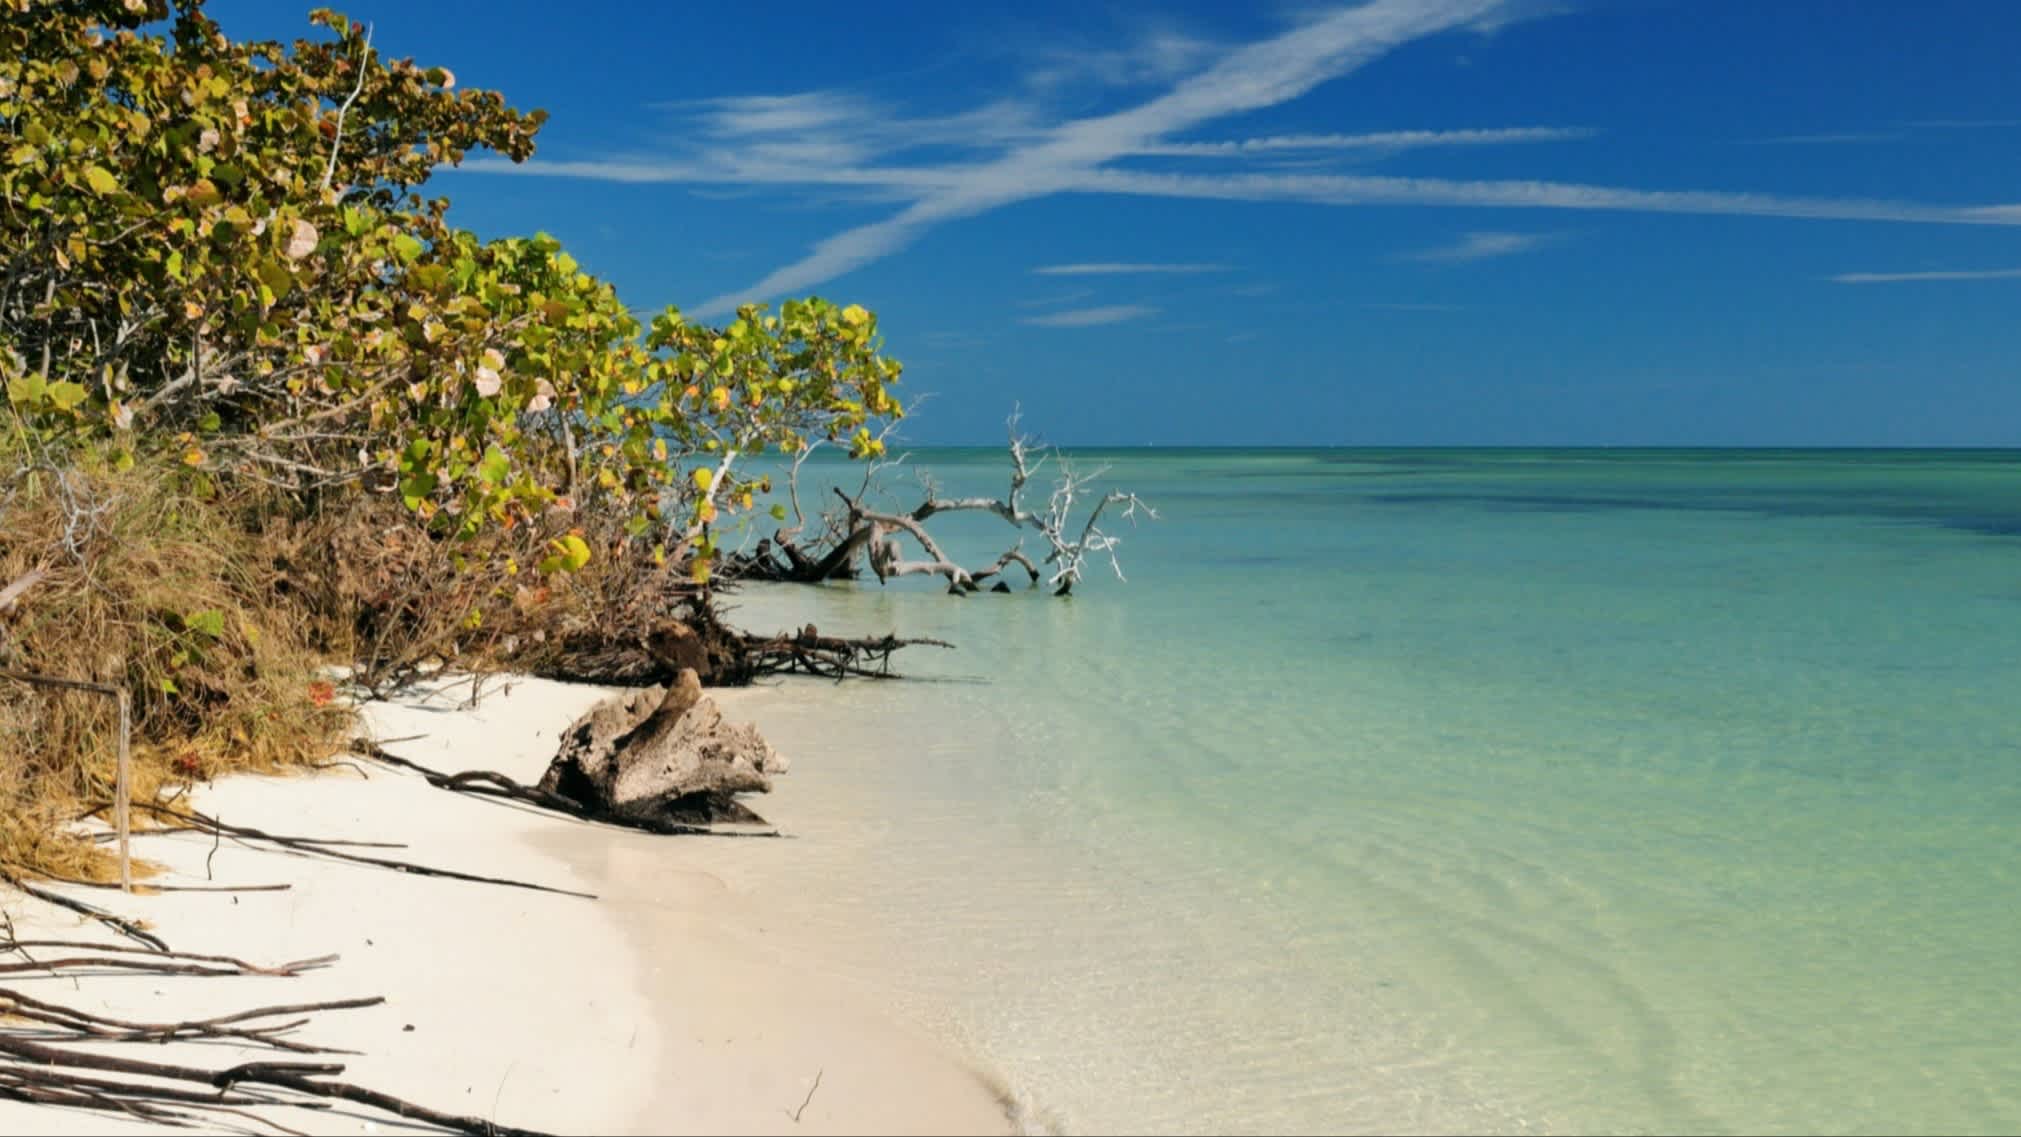 Der Strand des Bahia Honda State Park, Bahia Honda Key, Florida, USA bei purem Sonnenschein mit Blick auf das grüne Meer und natürliche Vegetation.